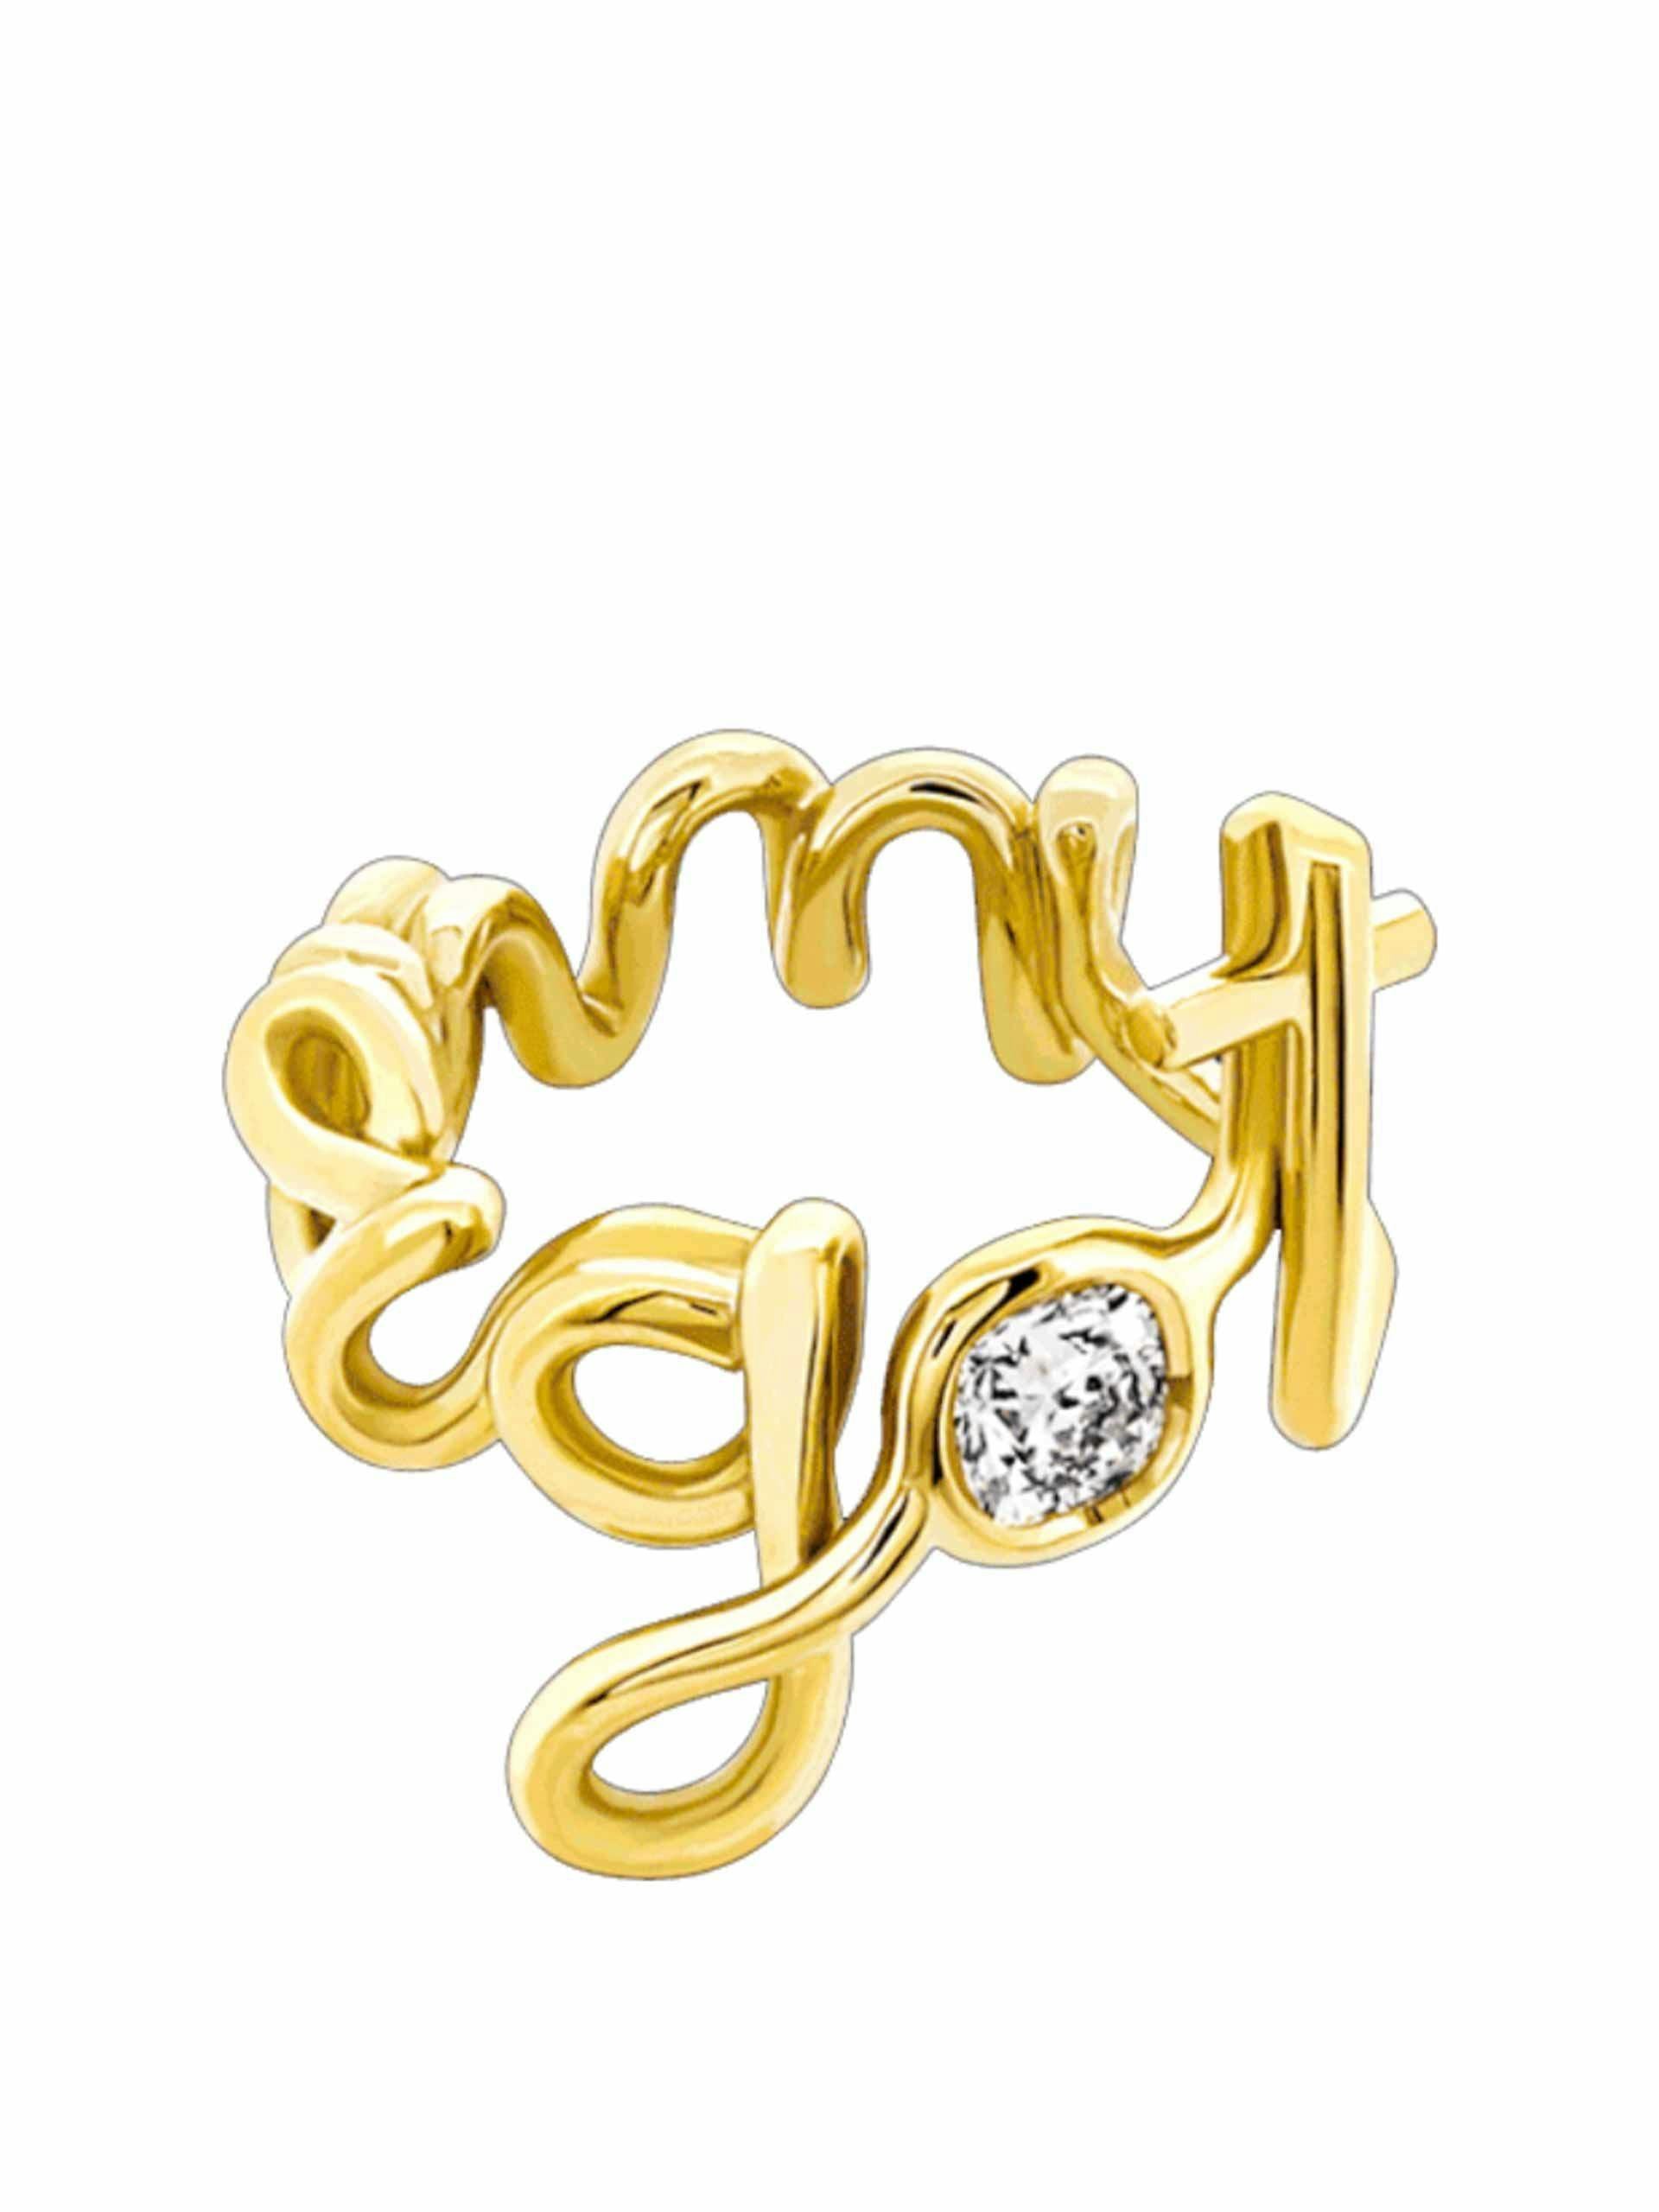 Bespoke gold and diamond written ring